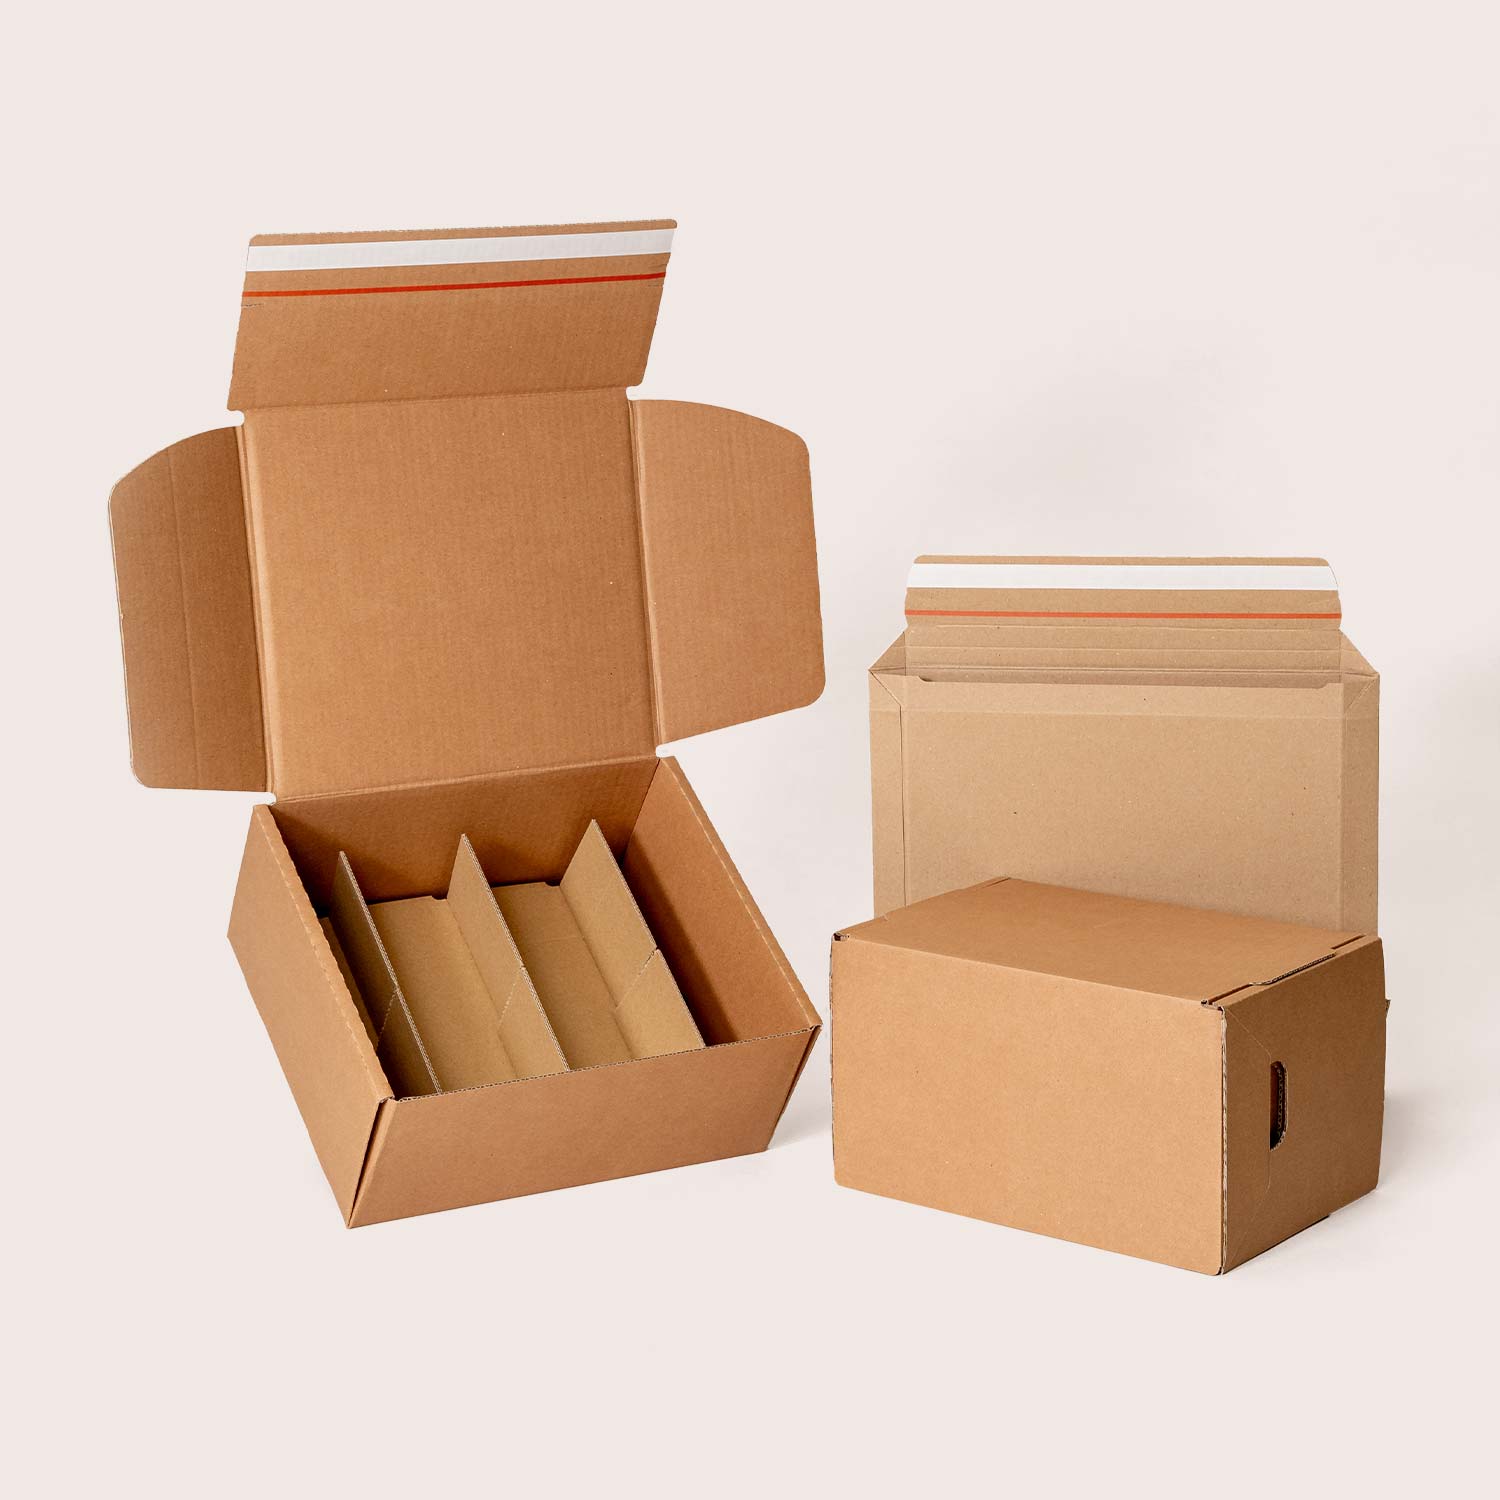 Cumpărați cutii de transport din carton